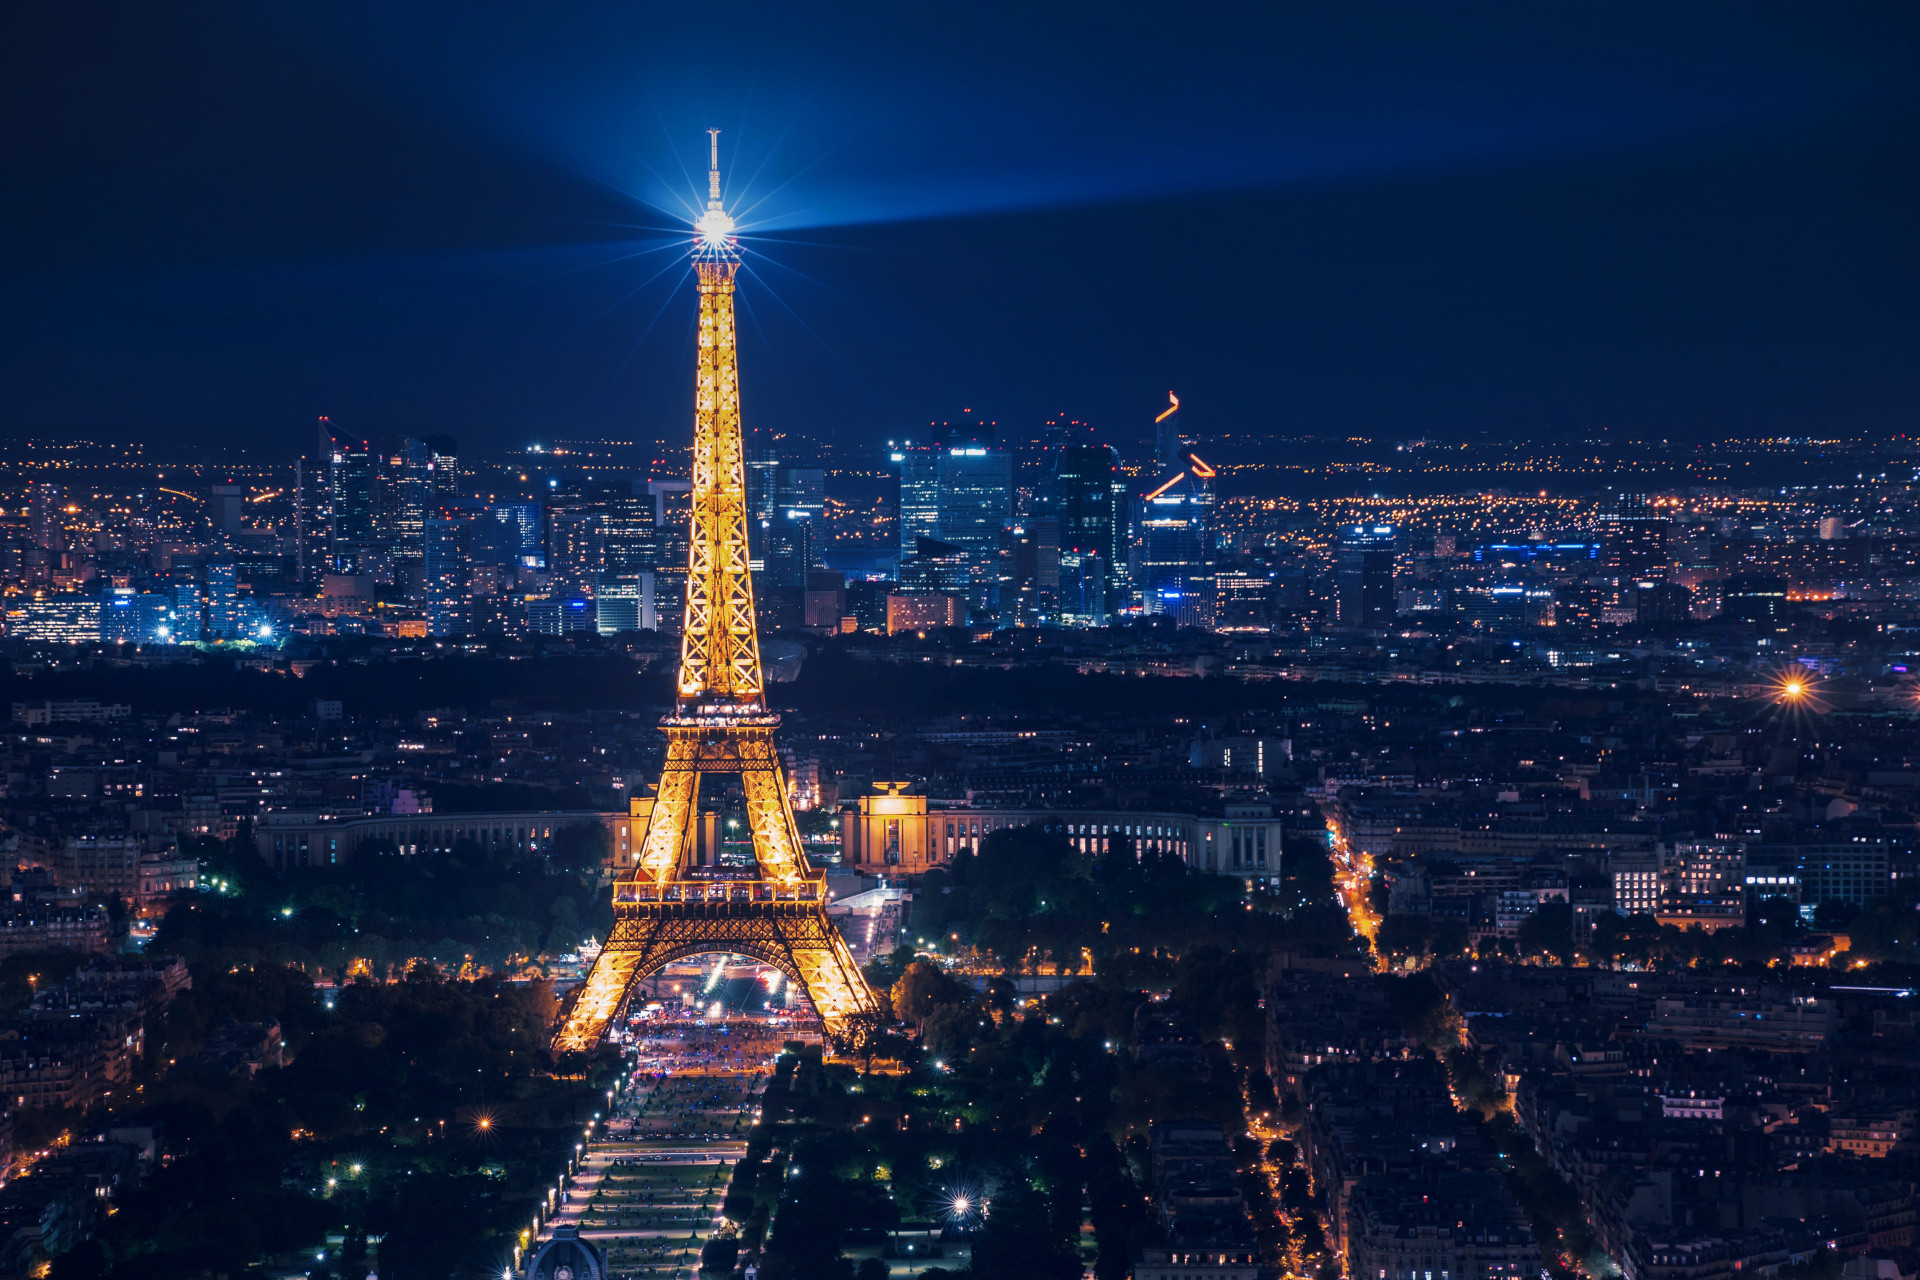 <p>Construite en 1889, la tour Eiffel demeure à ce jour un des <a href="https://www.starsinsider.com/fr/voyage/214704/arcs-et-aqueducs-du-monde-un-heritage-admirable" rel="noopener">monuments</a> les plus visités du monde. Elle a été imaginée et conçue par Frédéric Auguste Bartholdi et Gustave Eiffel. Bien que son architecture soit une des plus caractéristiques et qu'elle soit reconnaissable en un coup d'œil, l'histoire de la tour Eiffel reste assez méconnue. </p> <p>Cliquez sur la galerie pour découvrir des anecdotes fascinantes qui se cachent derrière cette attraction touristique immensément populaire. </p><p>Tu pourrais aussi aimer:<a href="https://www.starsinsider.com/n/186494?utm_source=msn.com&utm_medium=display&utm_campaign=referral_description&utm_content=722472"> Rafraîchissez-vous la mémoire: les hivers les plus rudes de la Belgique et de ses voisins</a></p>